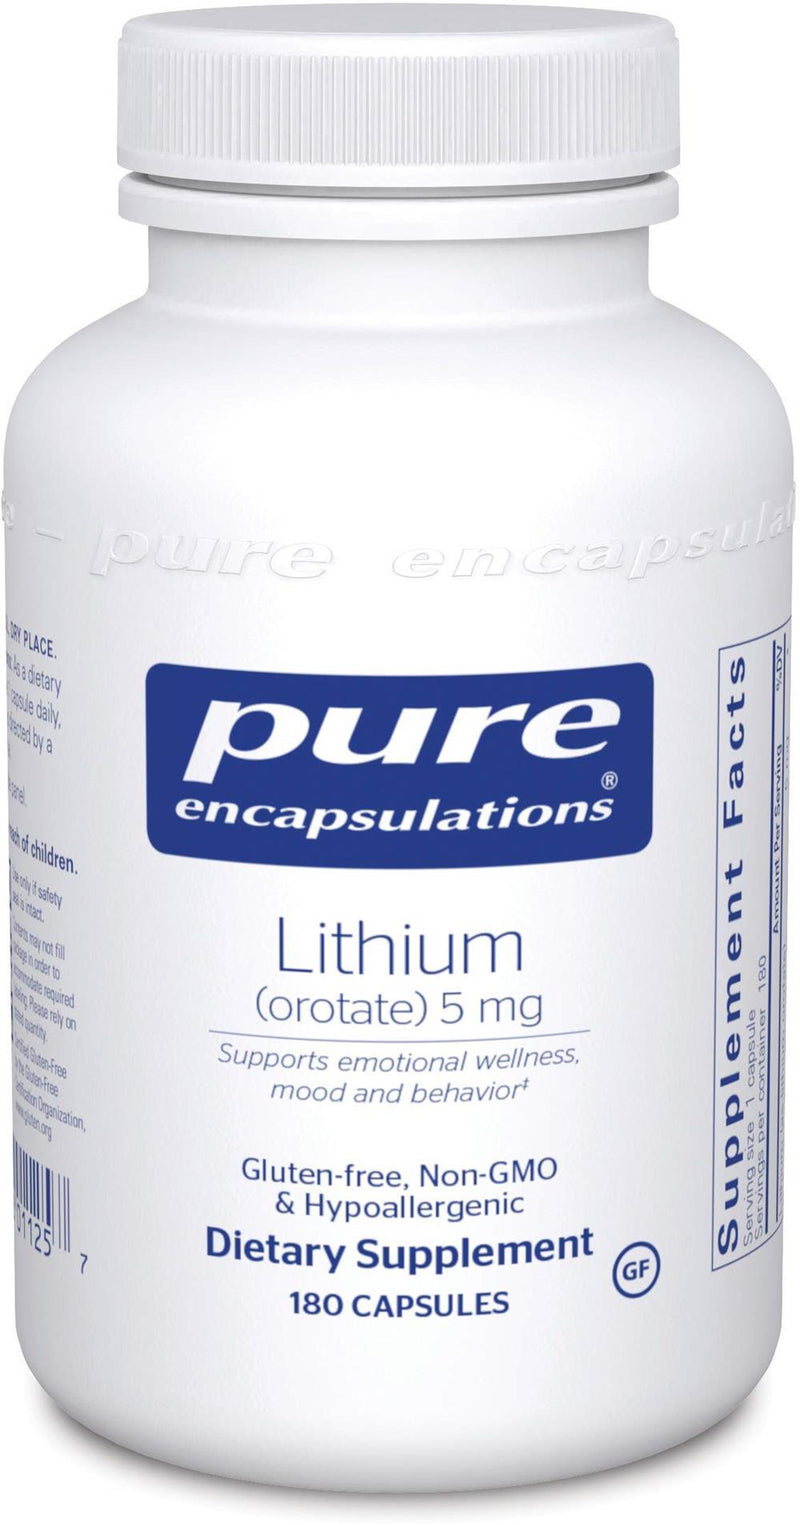 Pure Encapsulations Lithium (Orotate) 5 mg -- 90 Capsules 180 capsules